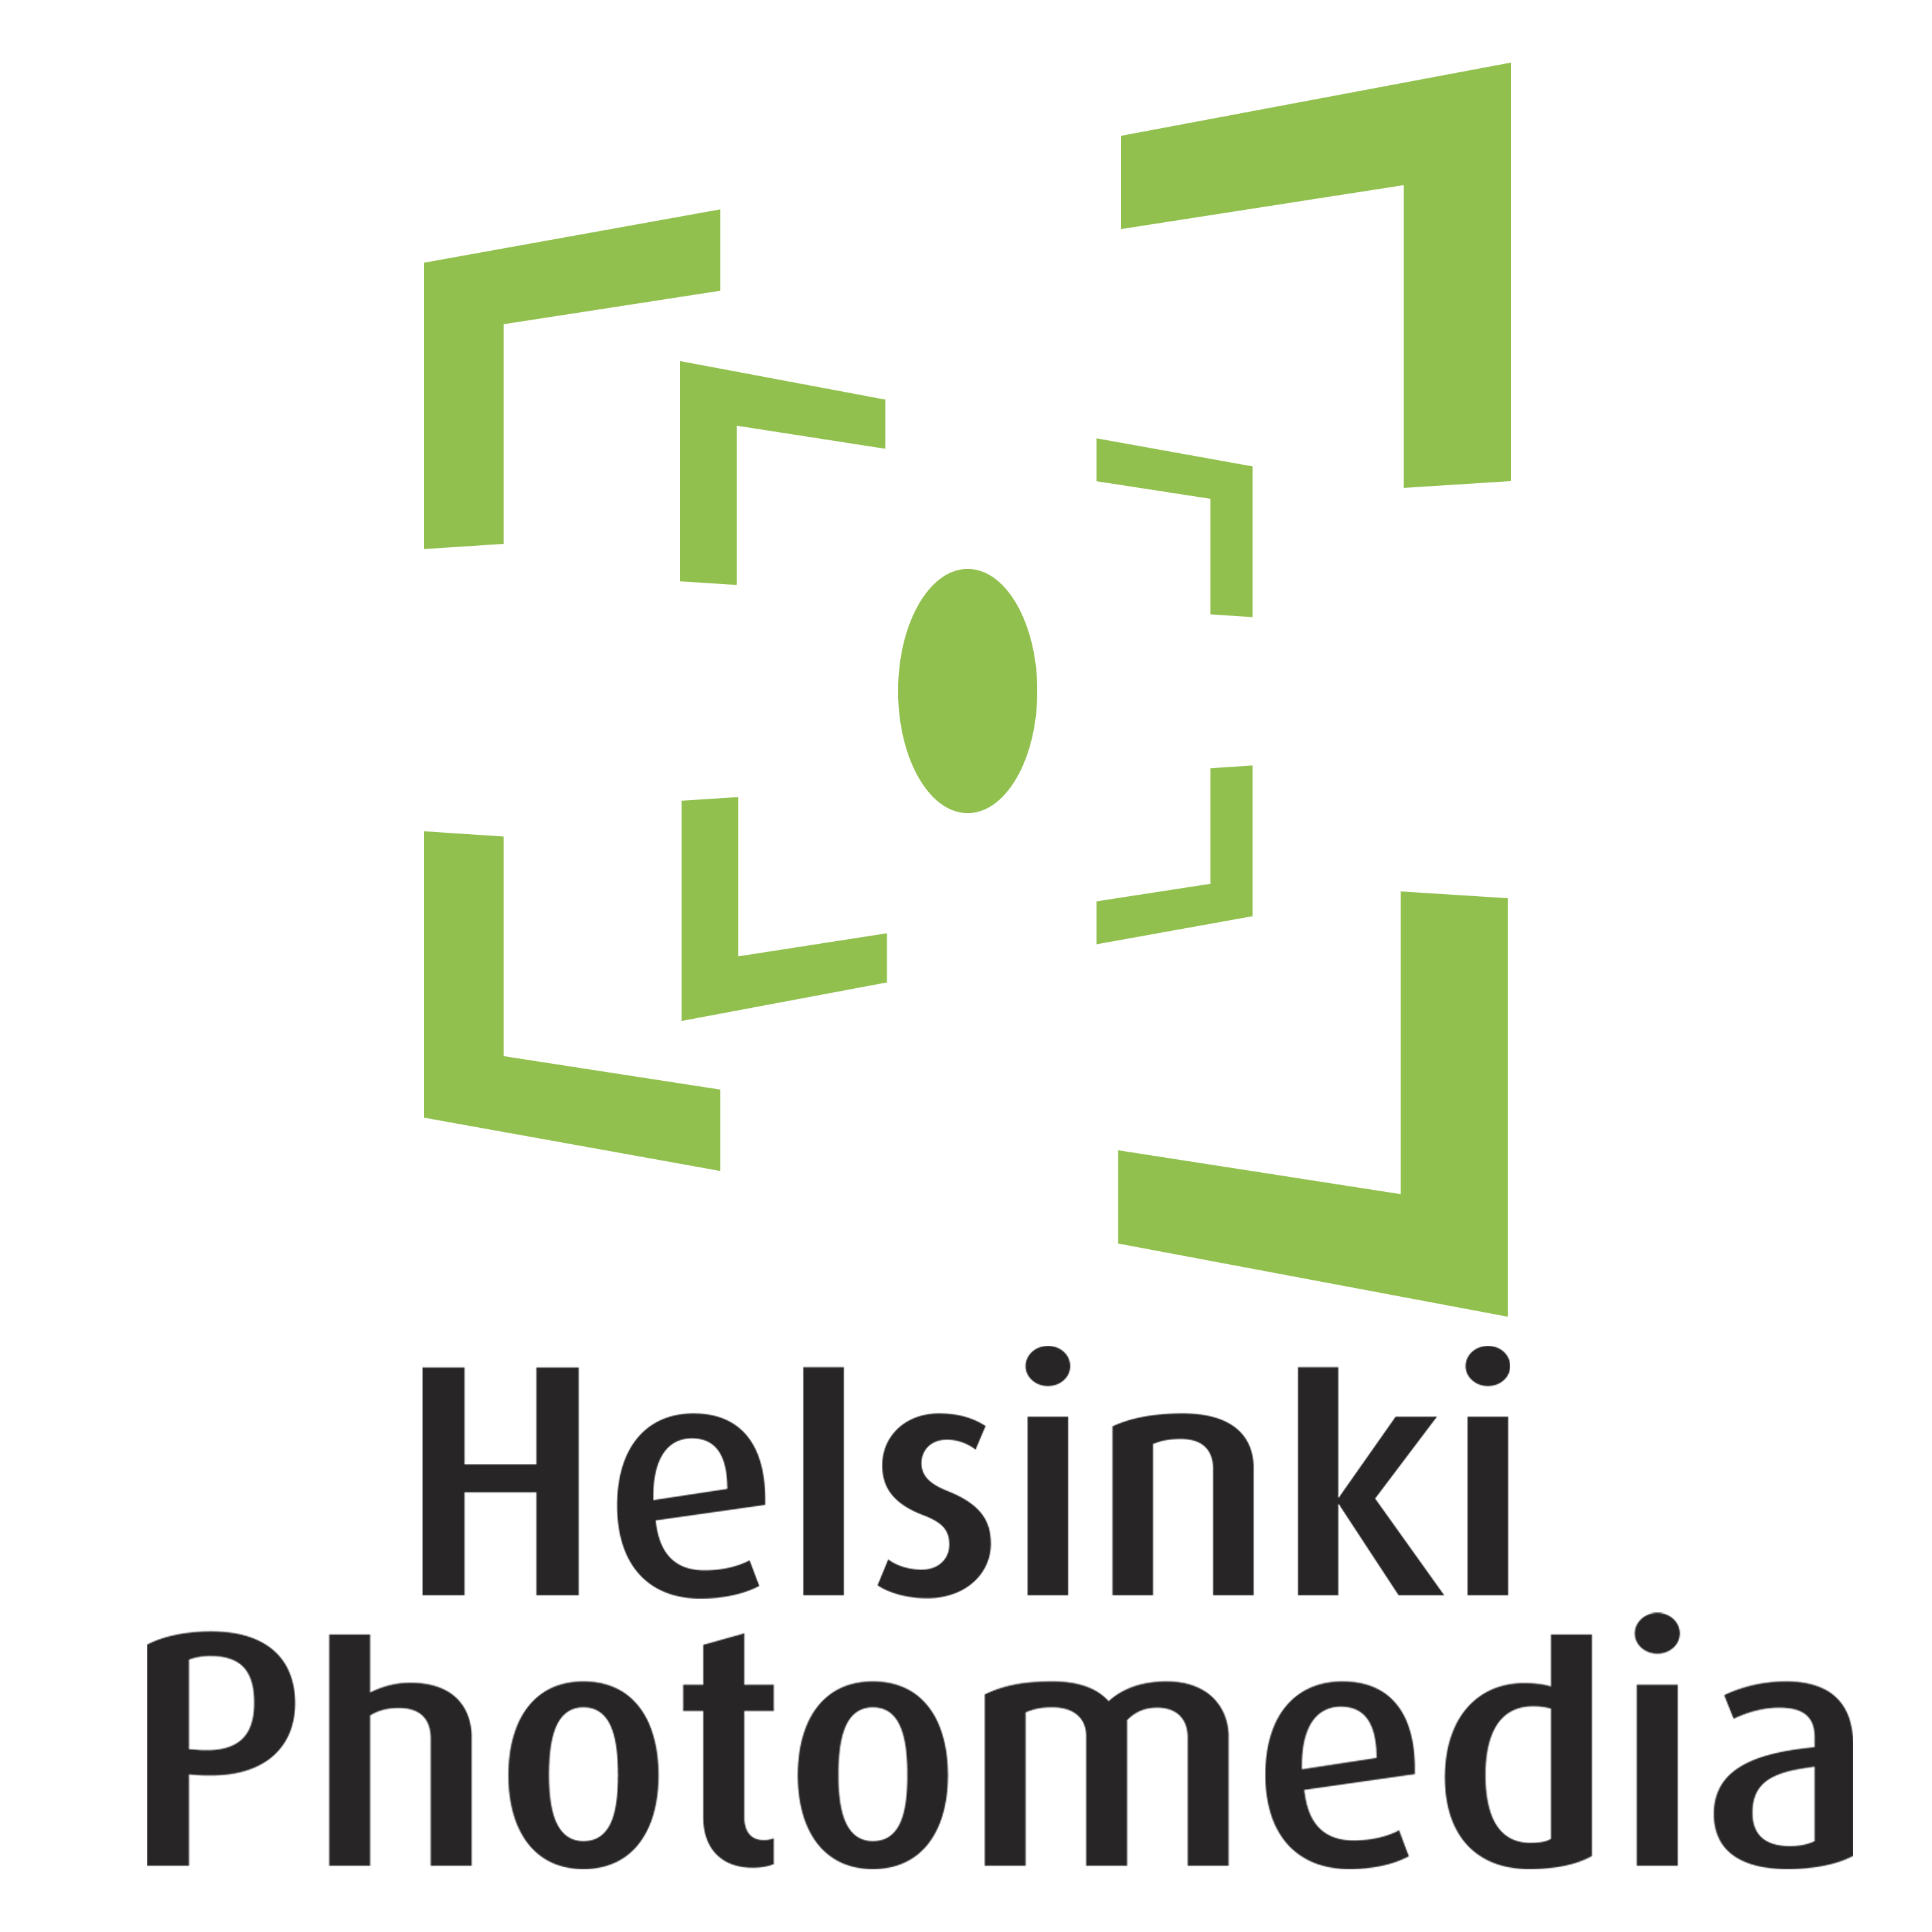 Helsinki Photomedia Conference